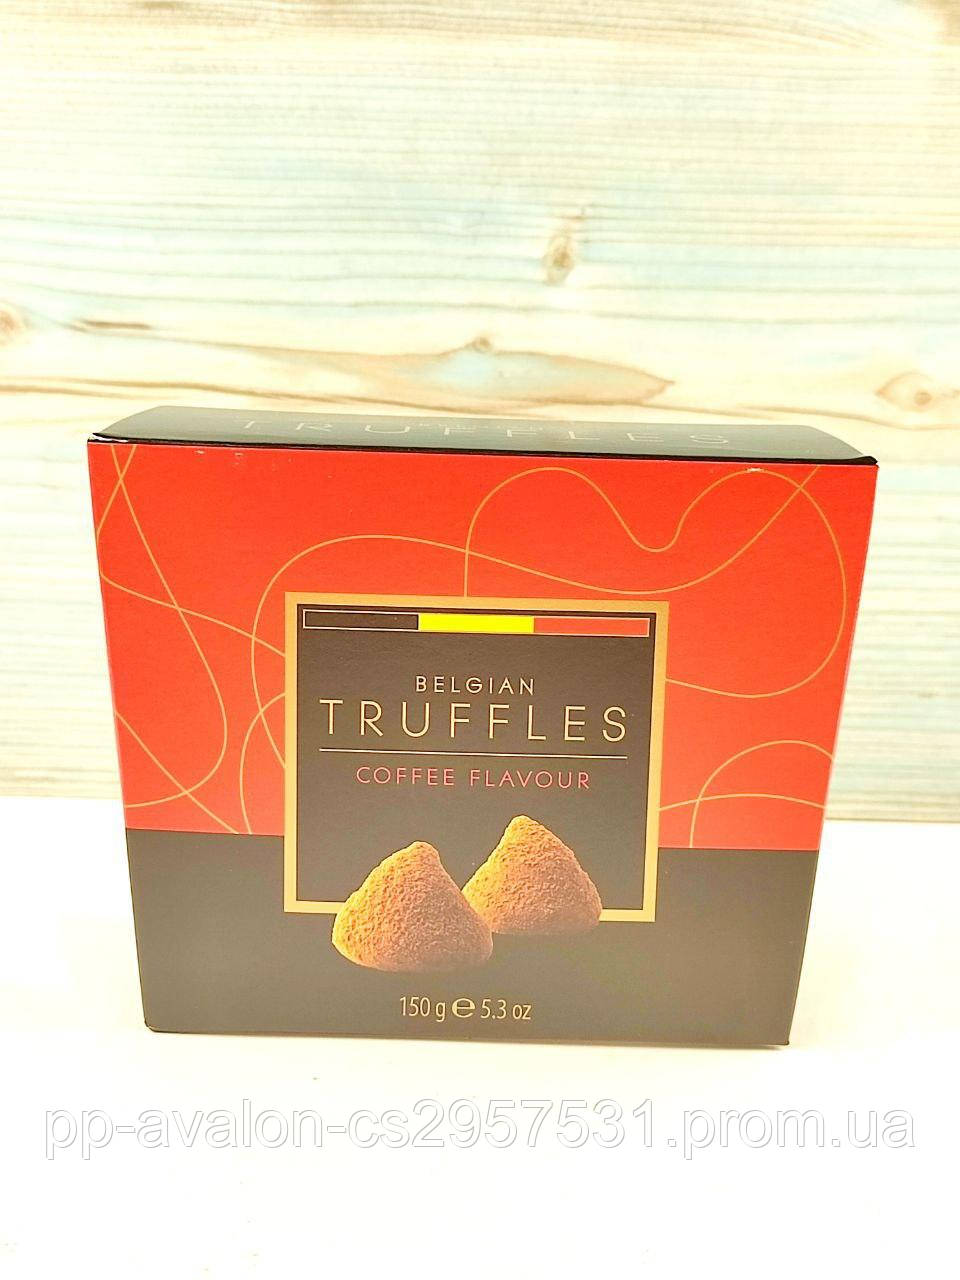 Цукерки трюфелі зі смаком кави Belgian Truffles Coffee Flavour 150г Бельгія